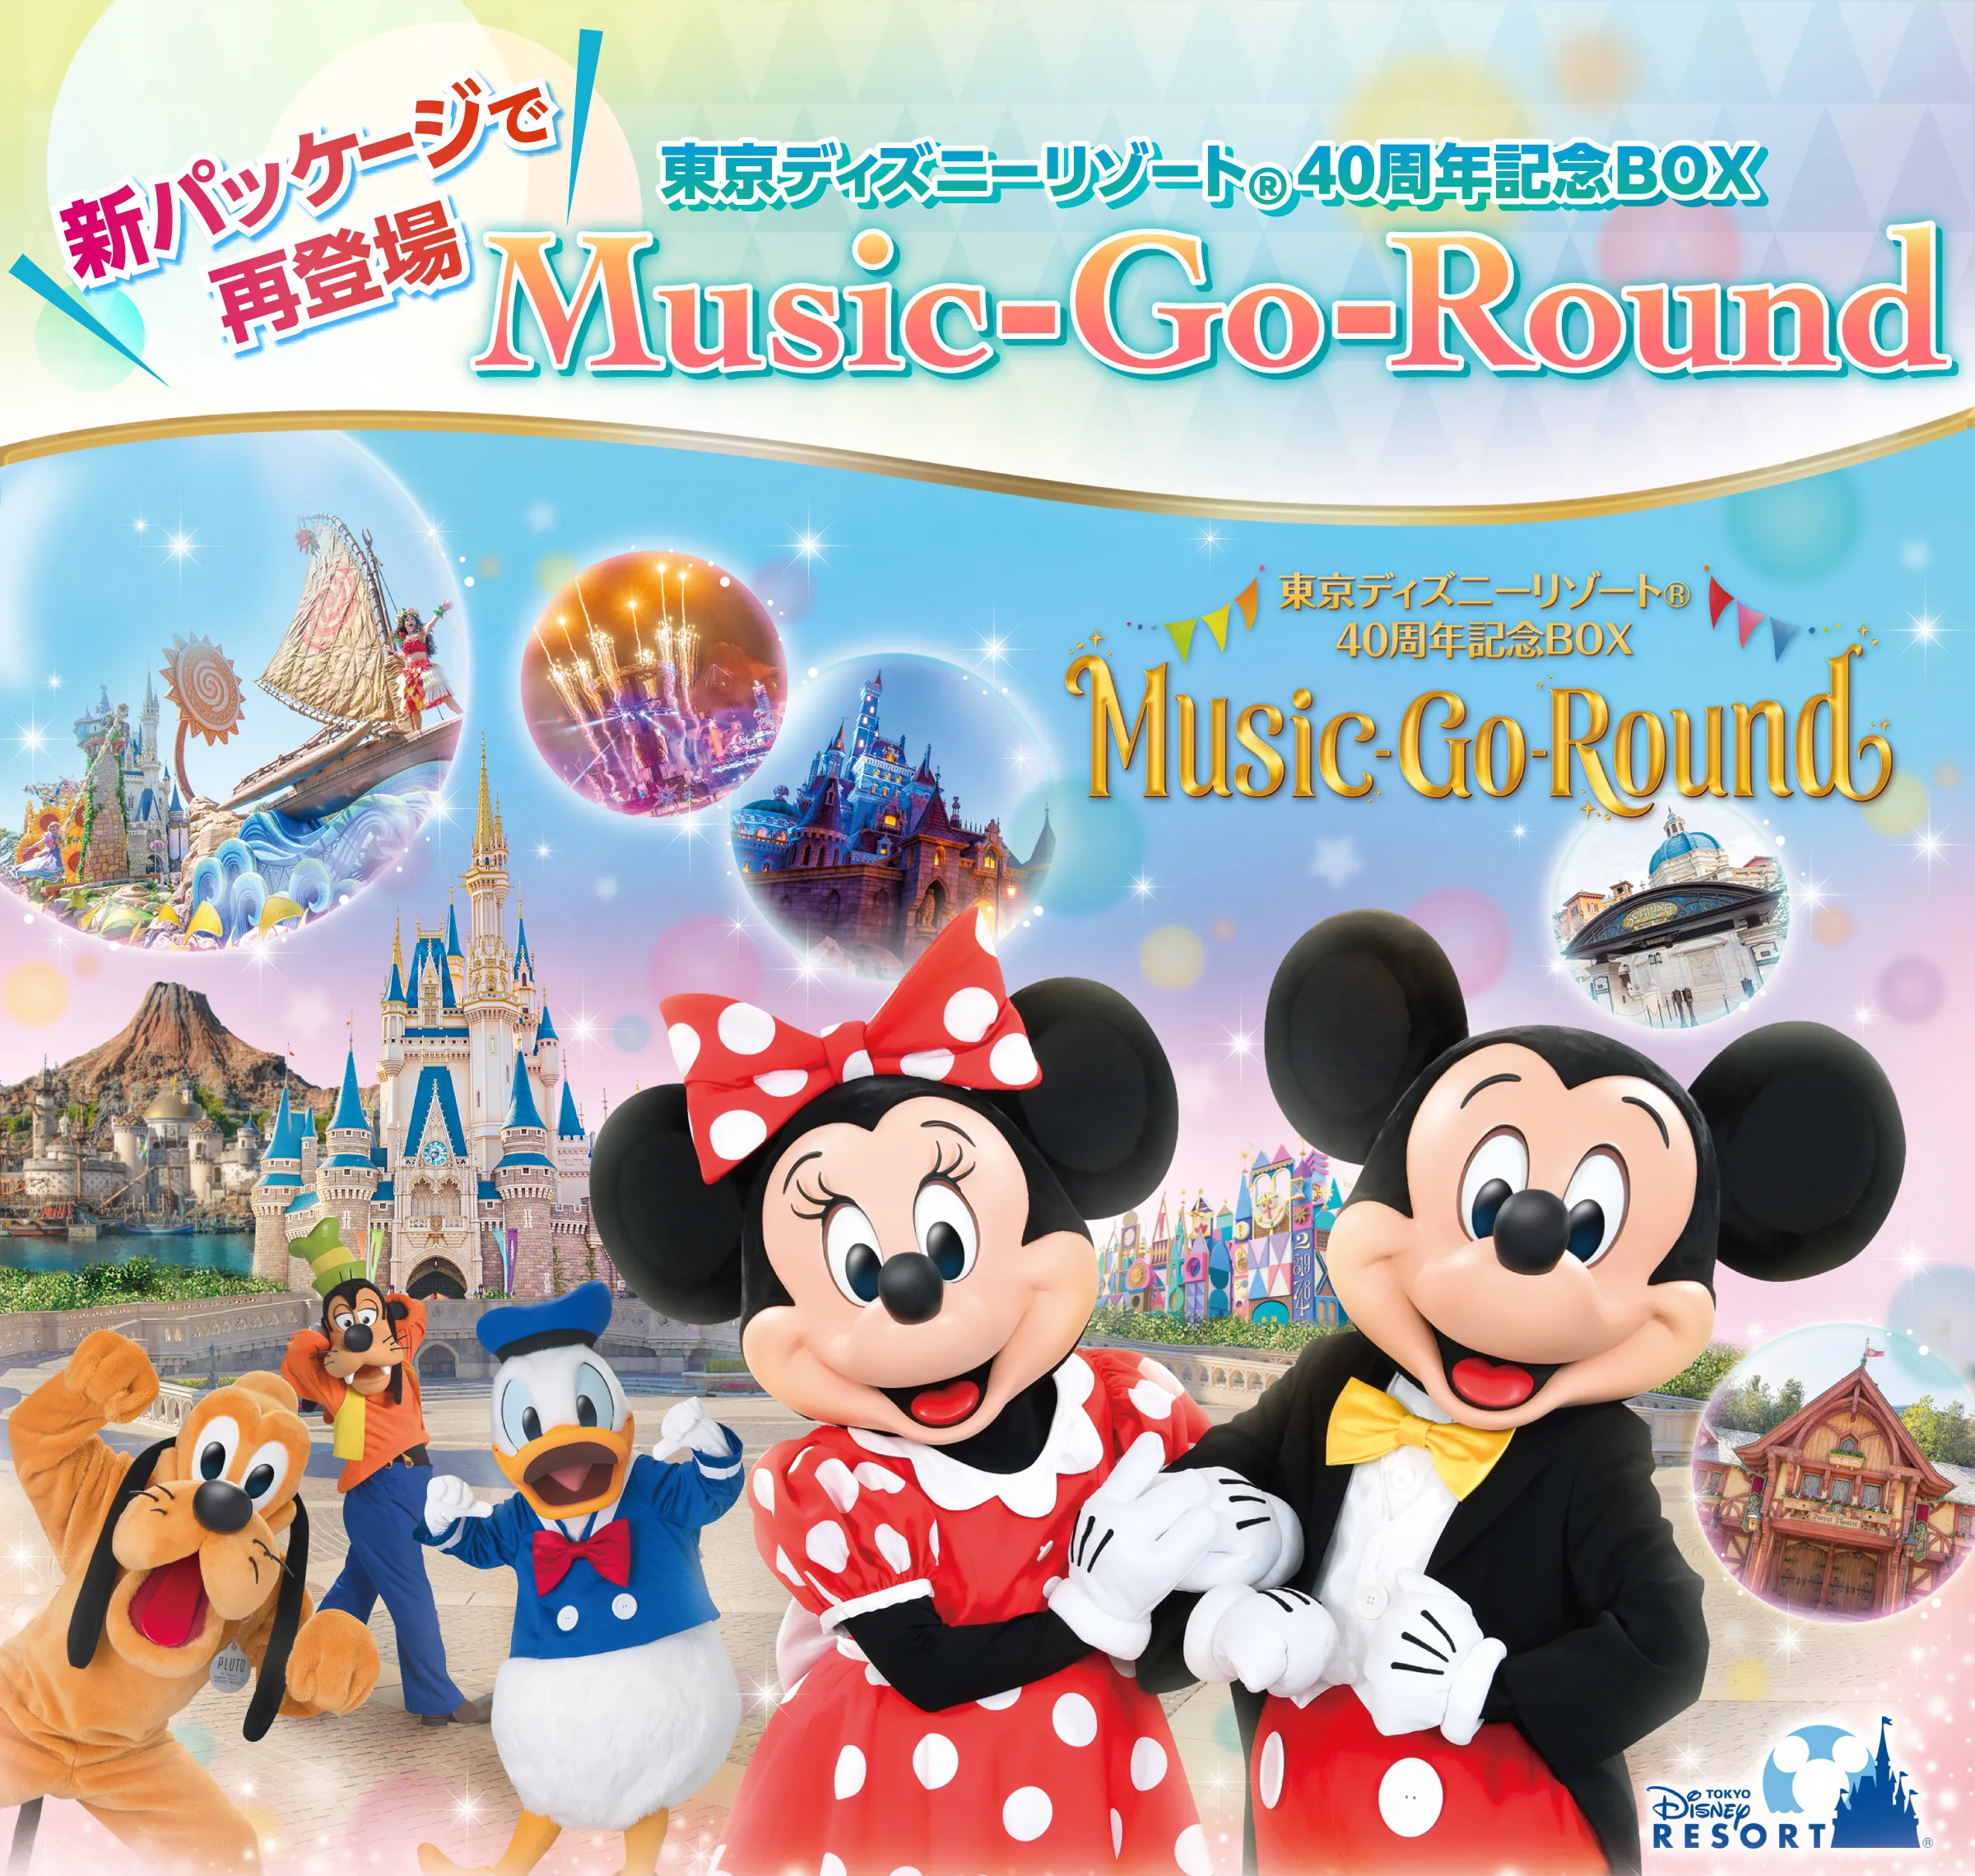 セット内容は全て揃っています【DX】東京ディズニーリゾート40周年記念BOX『Music Go Round』